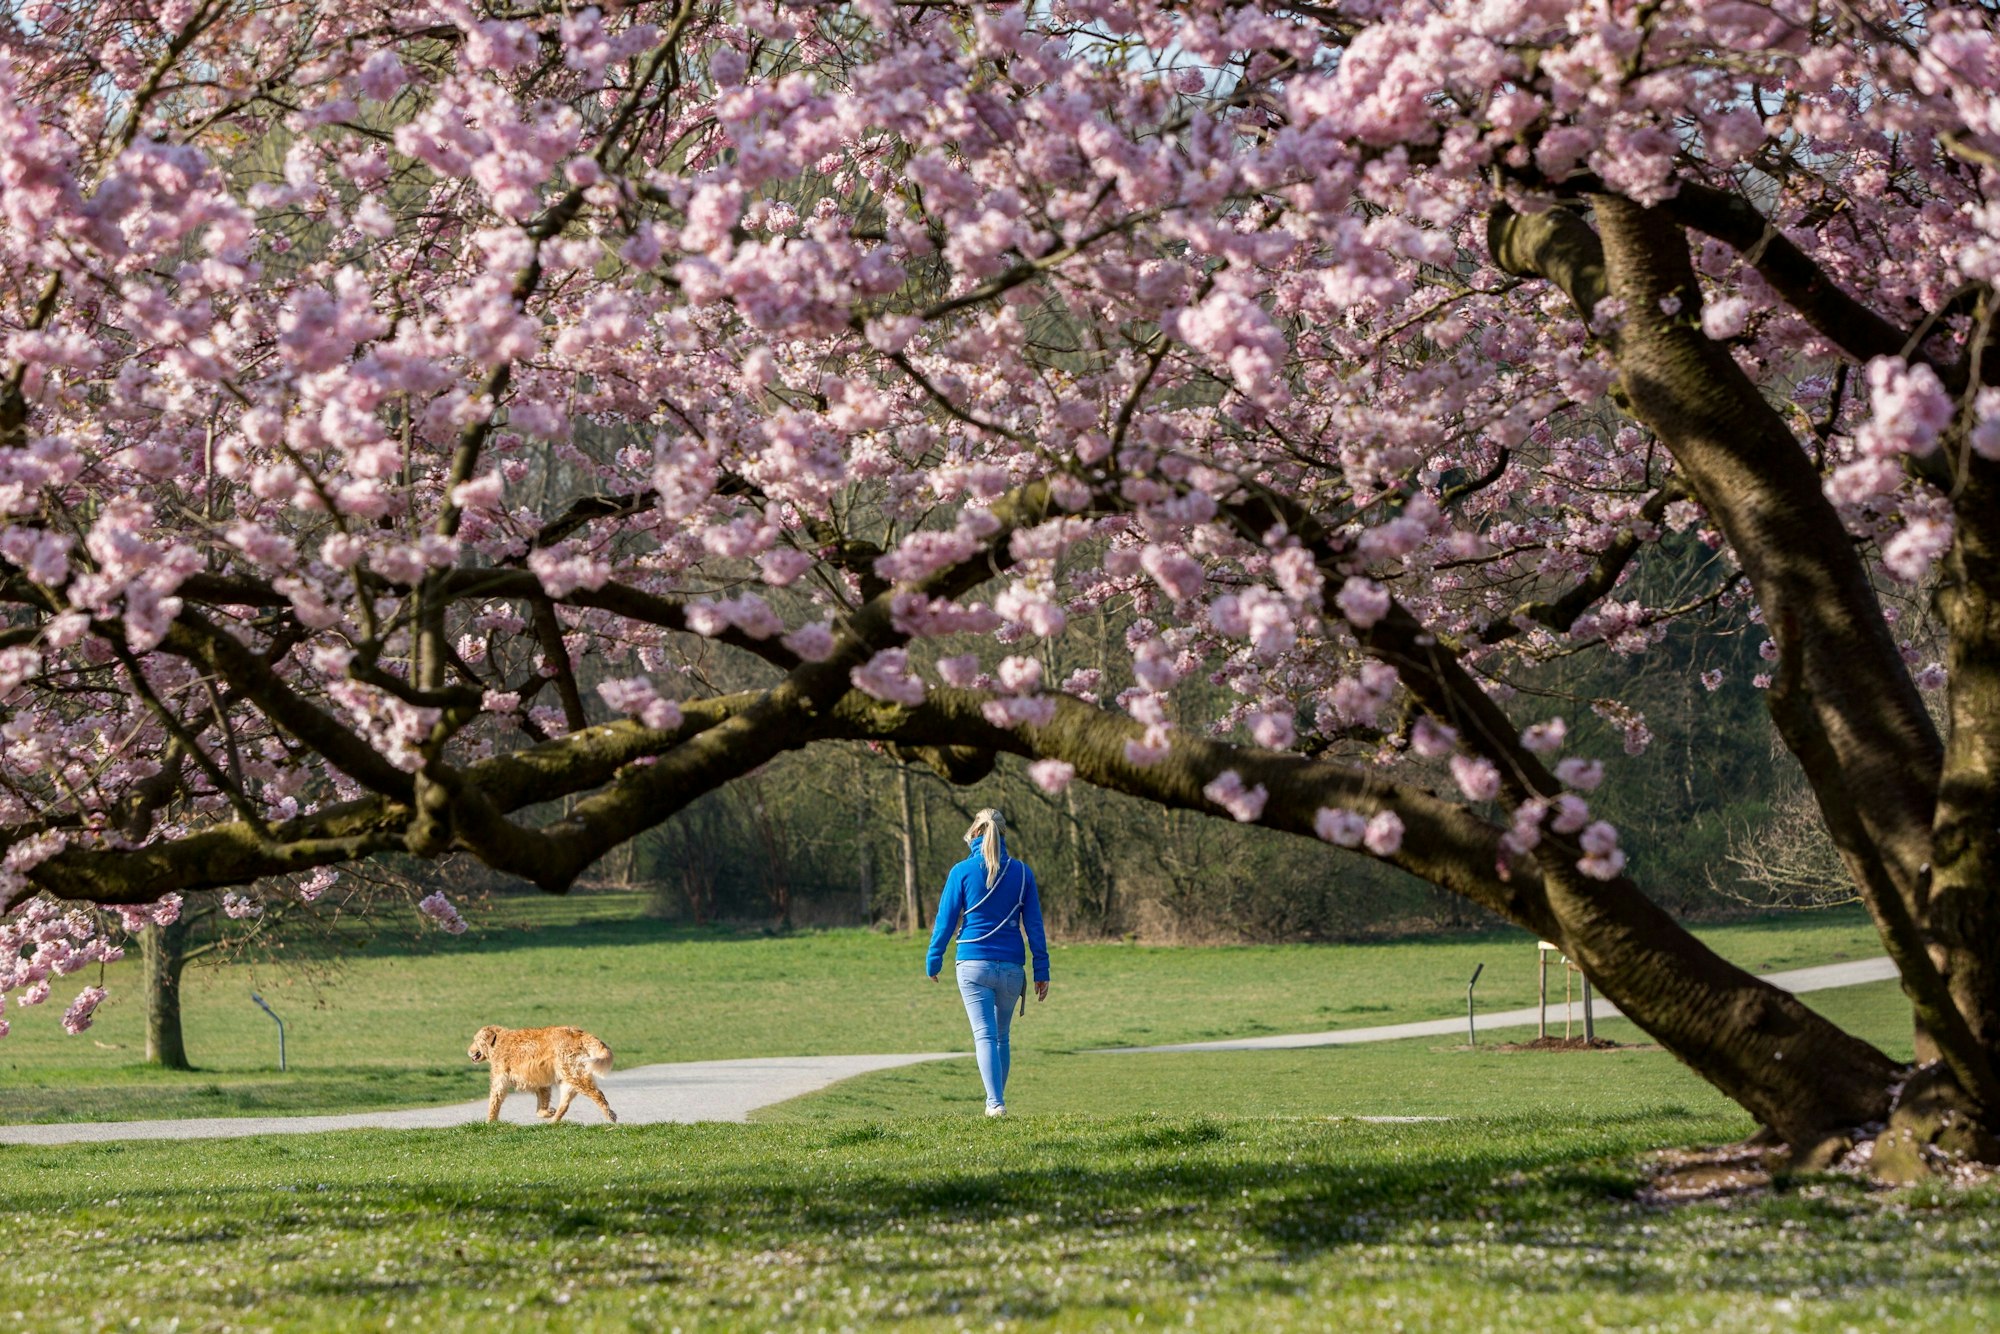 Eine Spaziergängerin mit Hund spaziert unter Kirschbäumen in einem Park.











